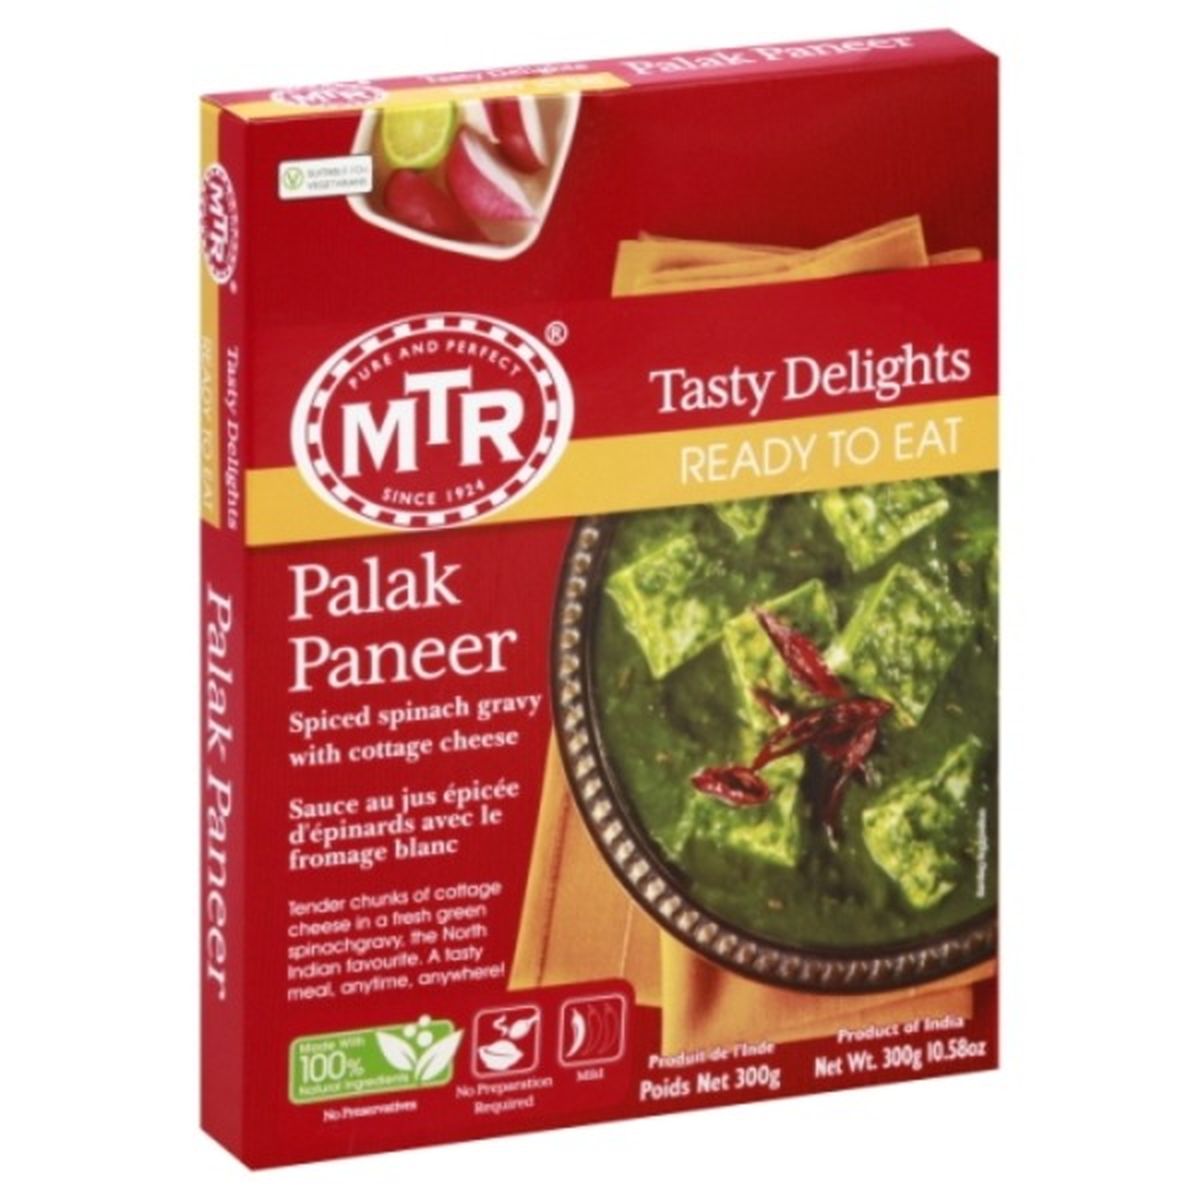 Calories in MTR Palak Paneer